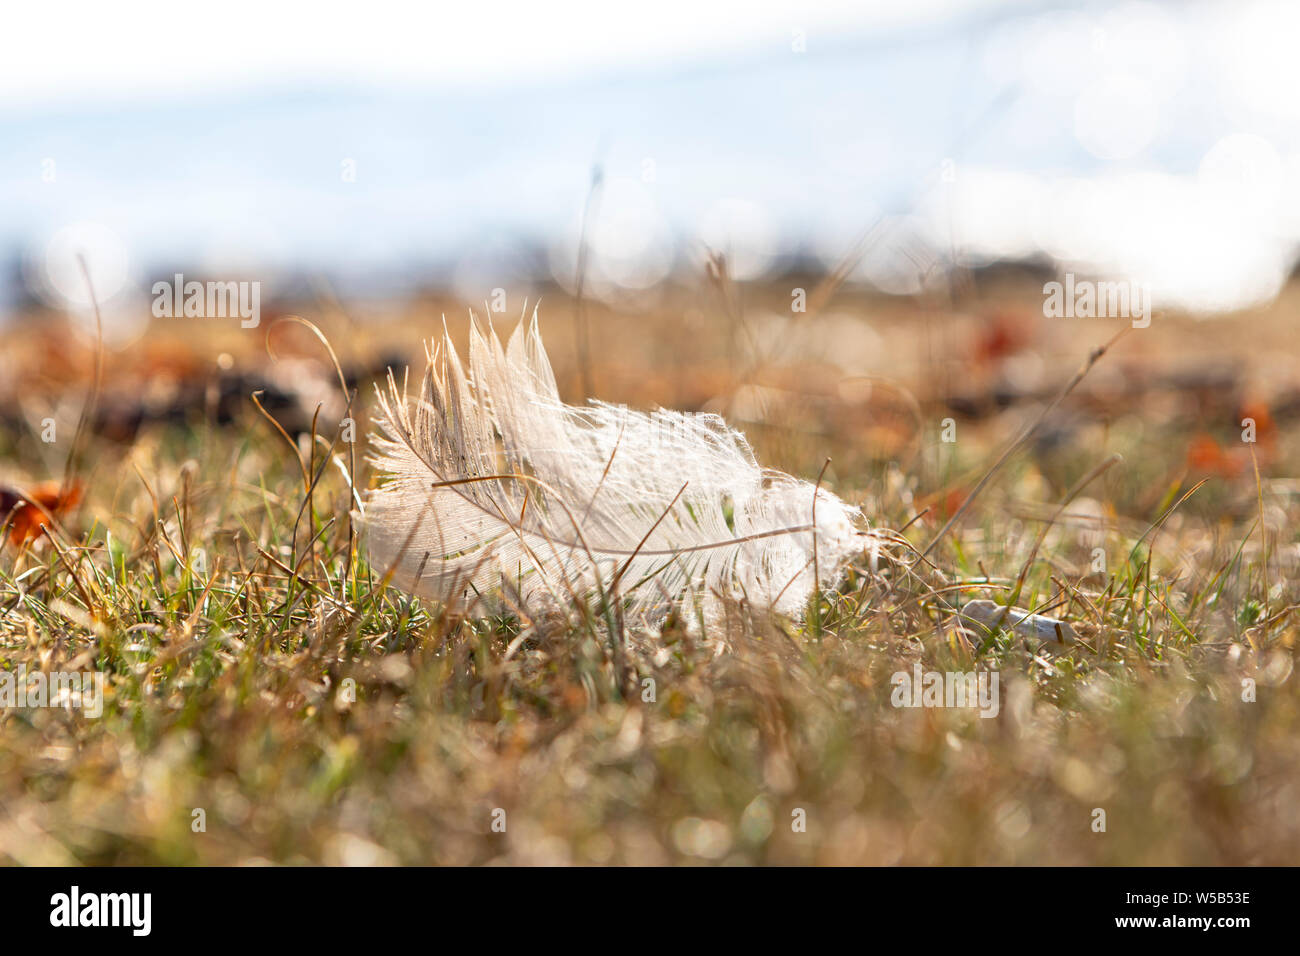 Nahaufnahme eines einzigen weißen Vogel Feder auf Tundra Gras neben einem Strand mit einem unscharfen Hintergrund Stockfoto